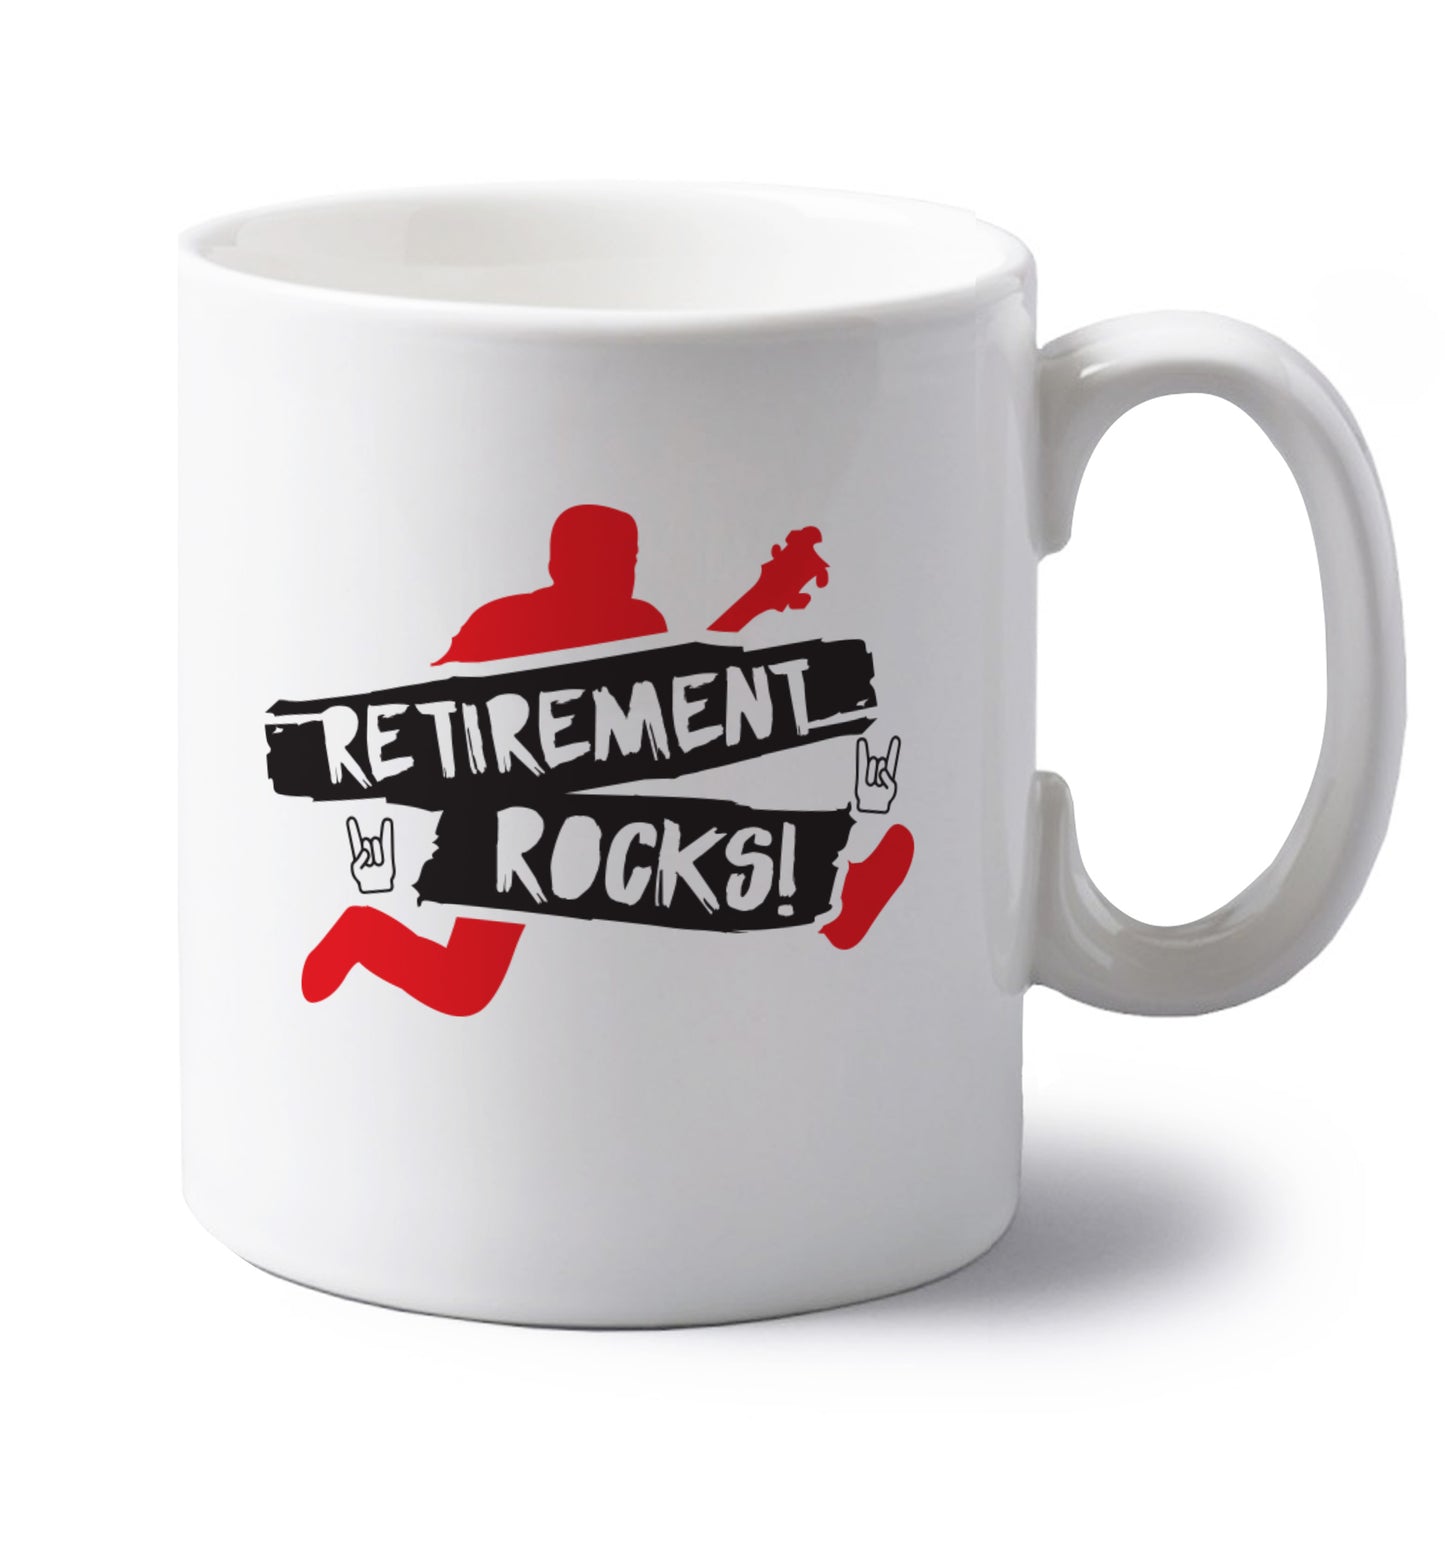 Retirement Rocks left handed white ceramic mug 